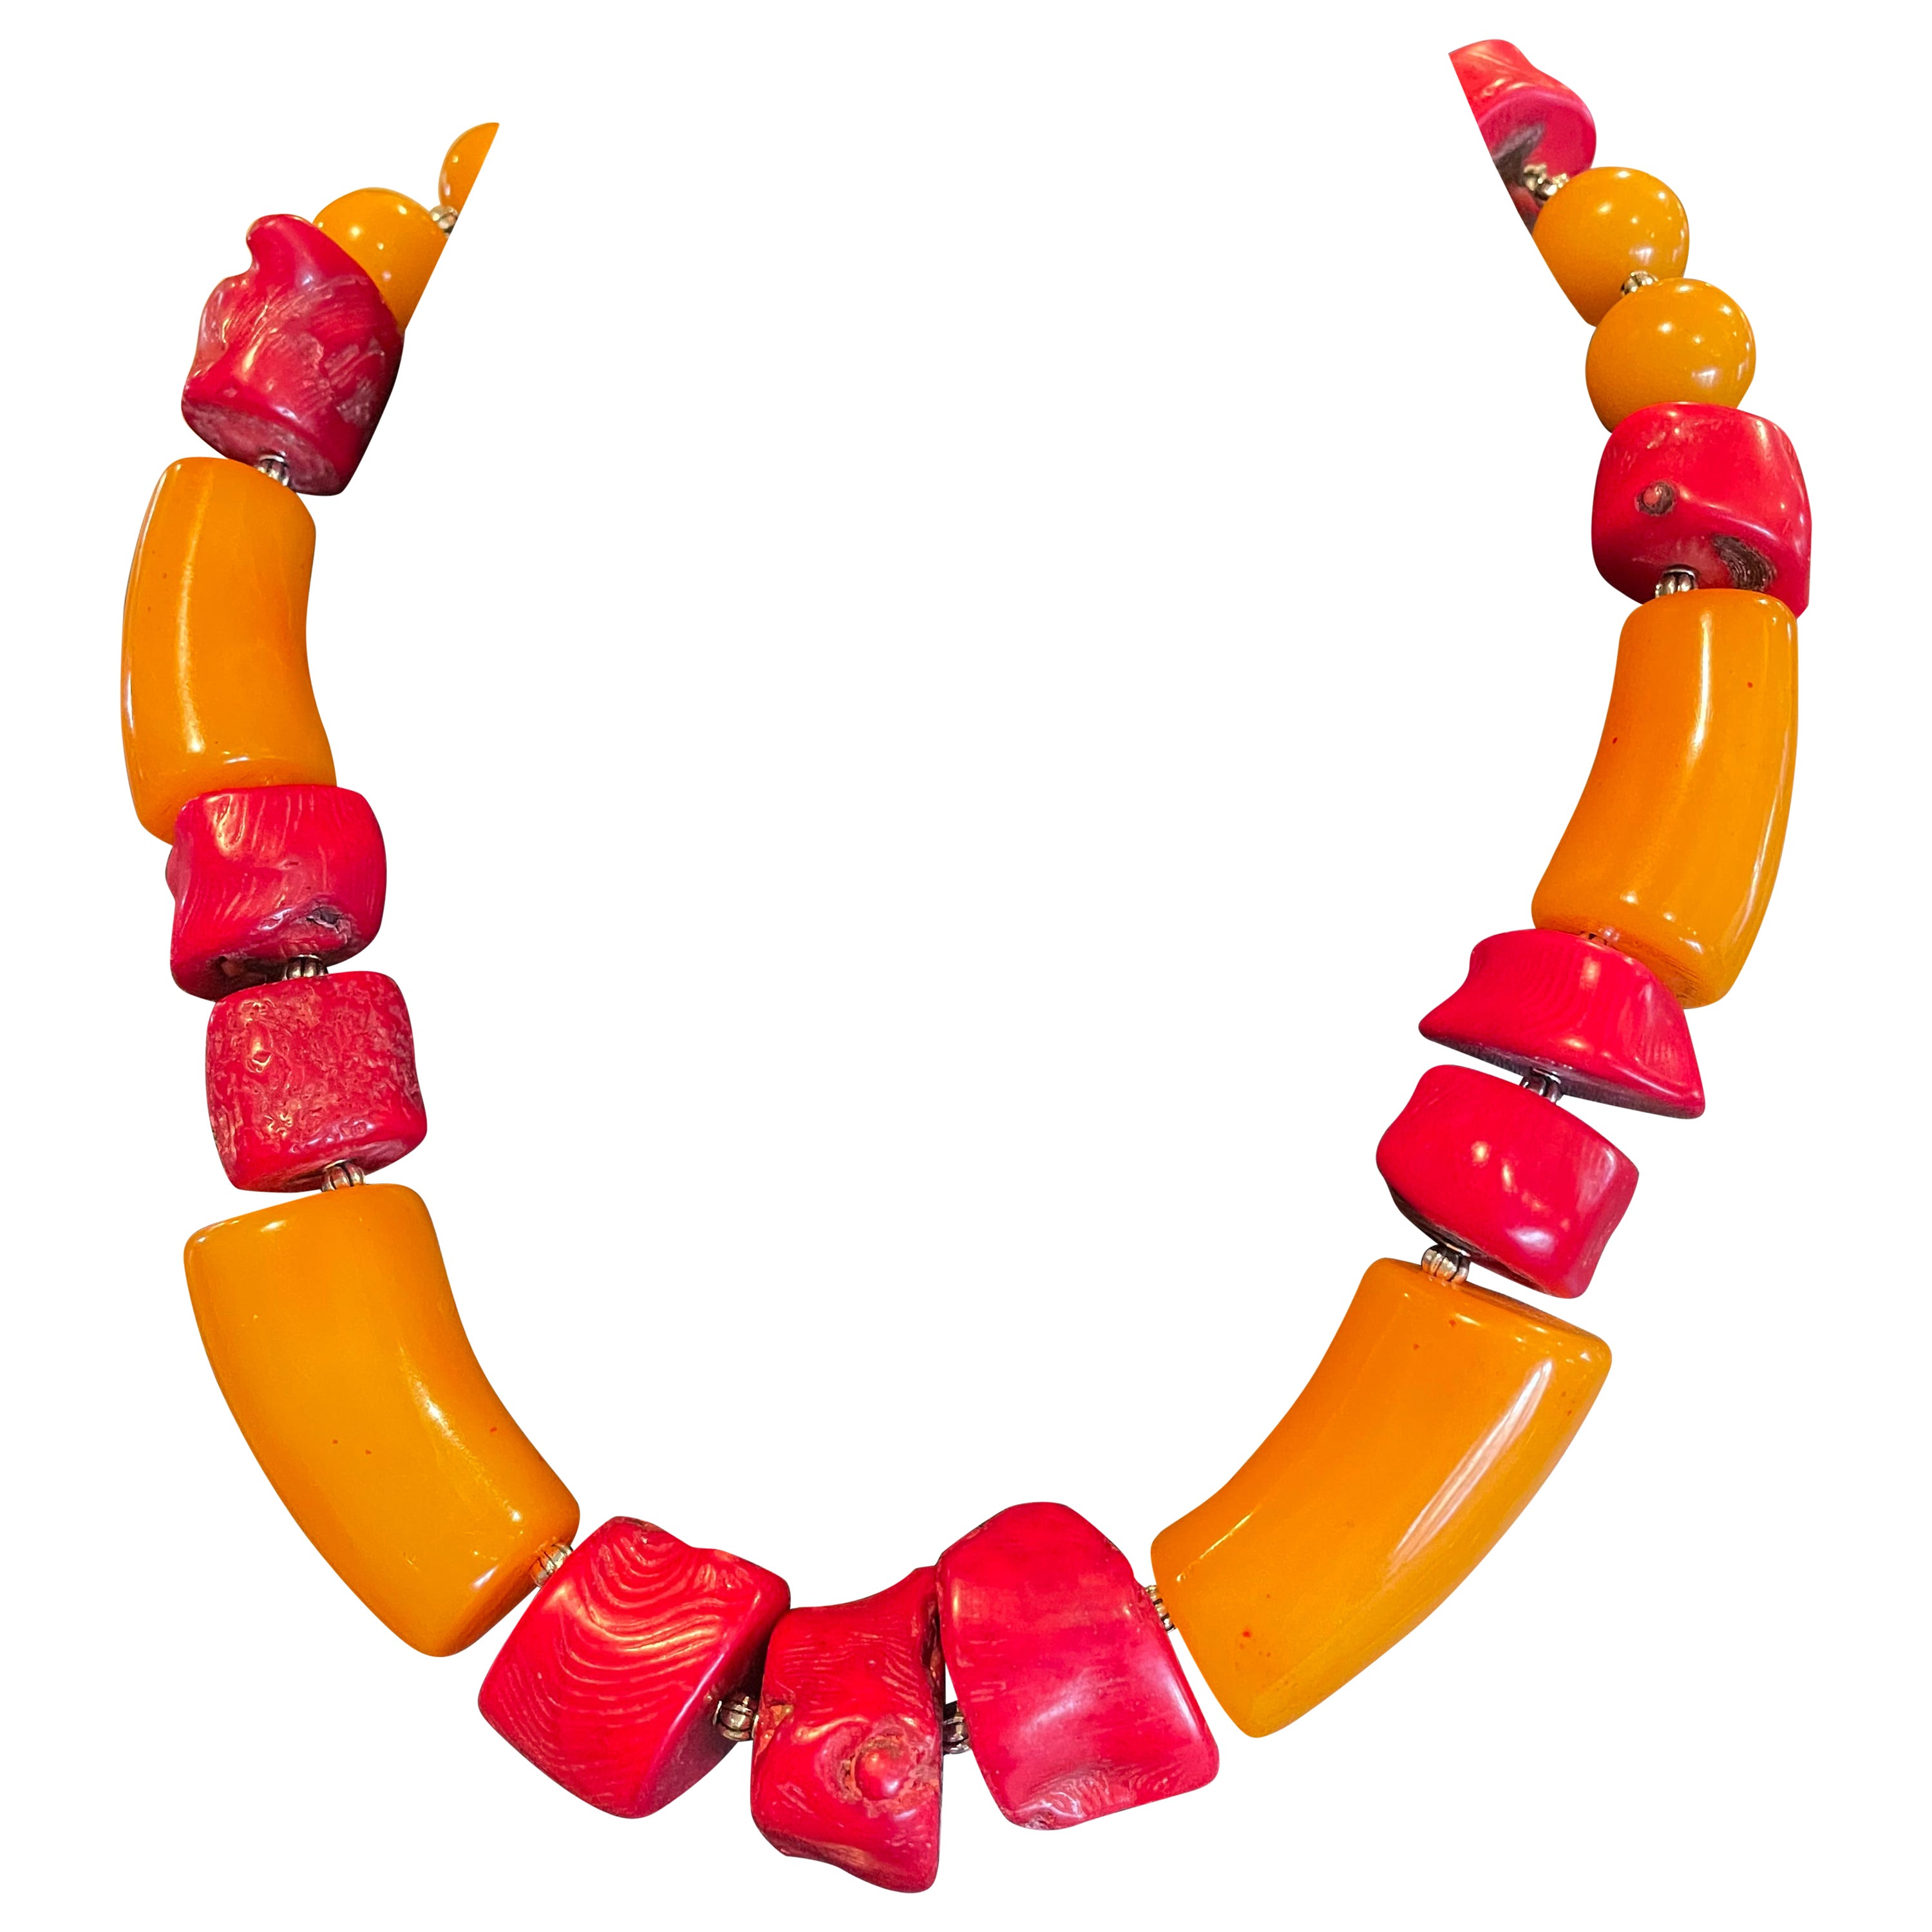 LB bietet eine atemberaubende Halskette aus dramatischem französischem Bakelit und roter Koralle im Angebot